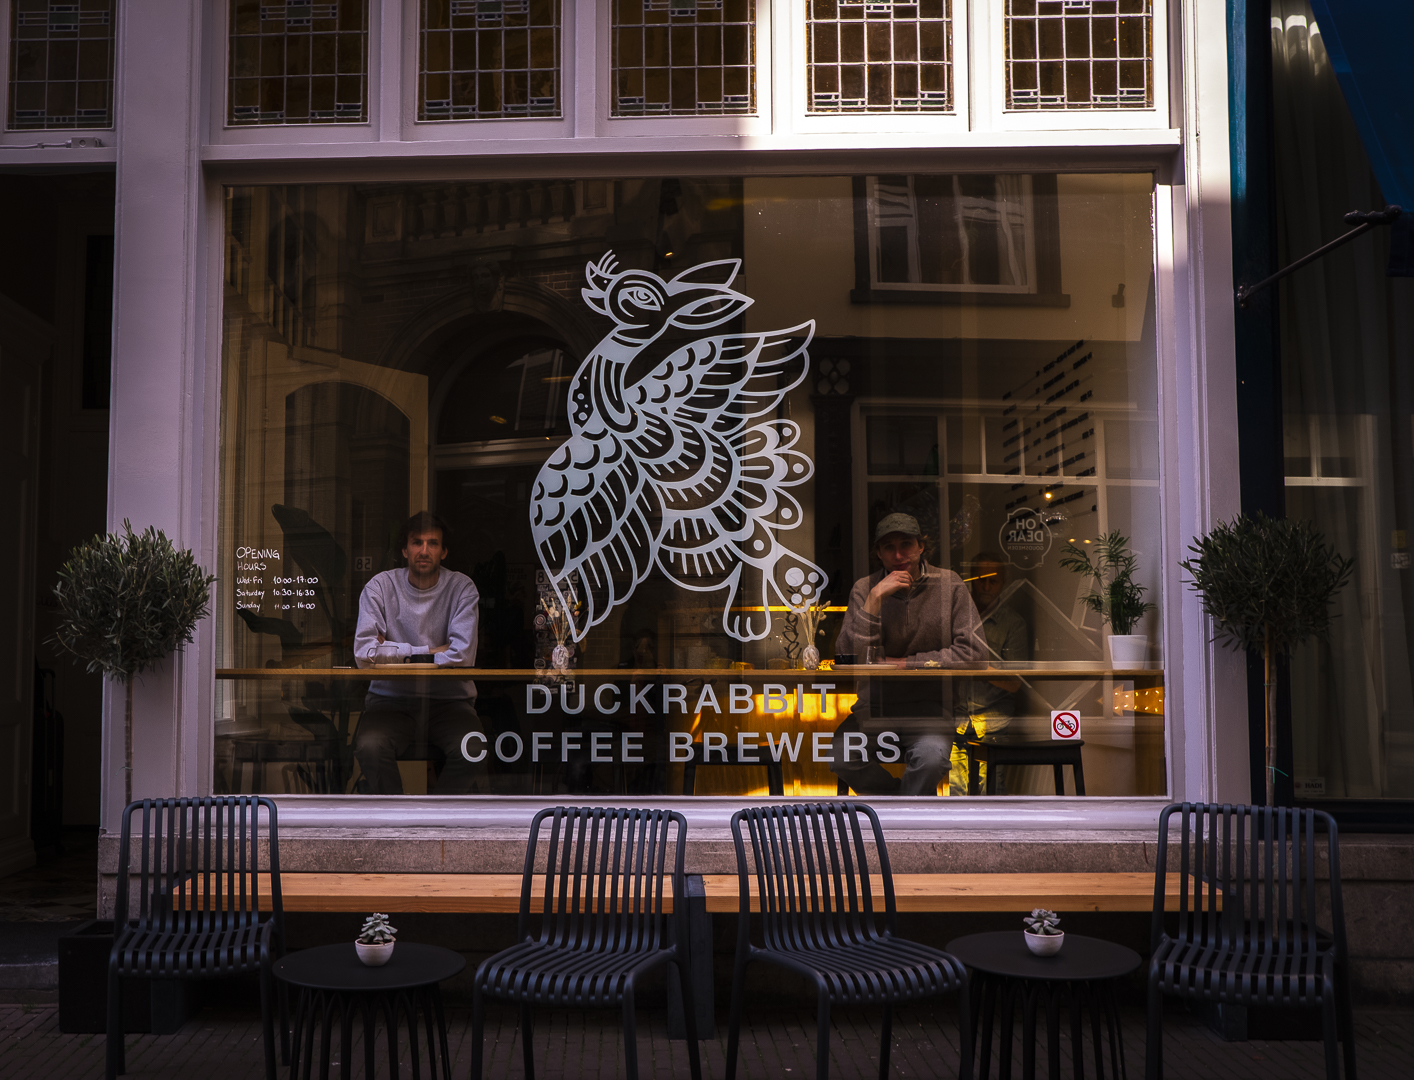 Shop window with DuckRabbit coffee brewers written on it